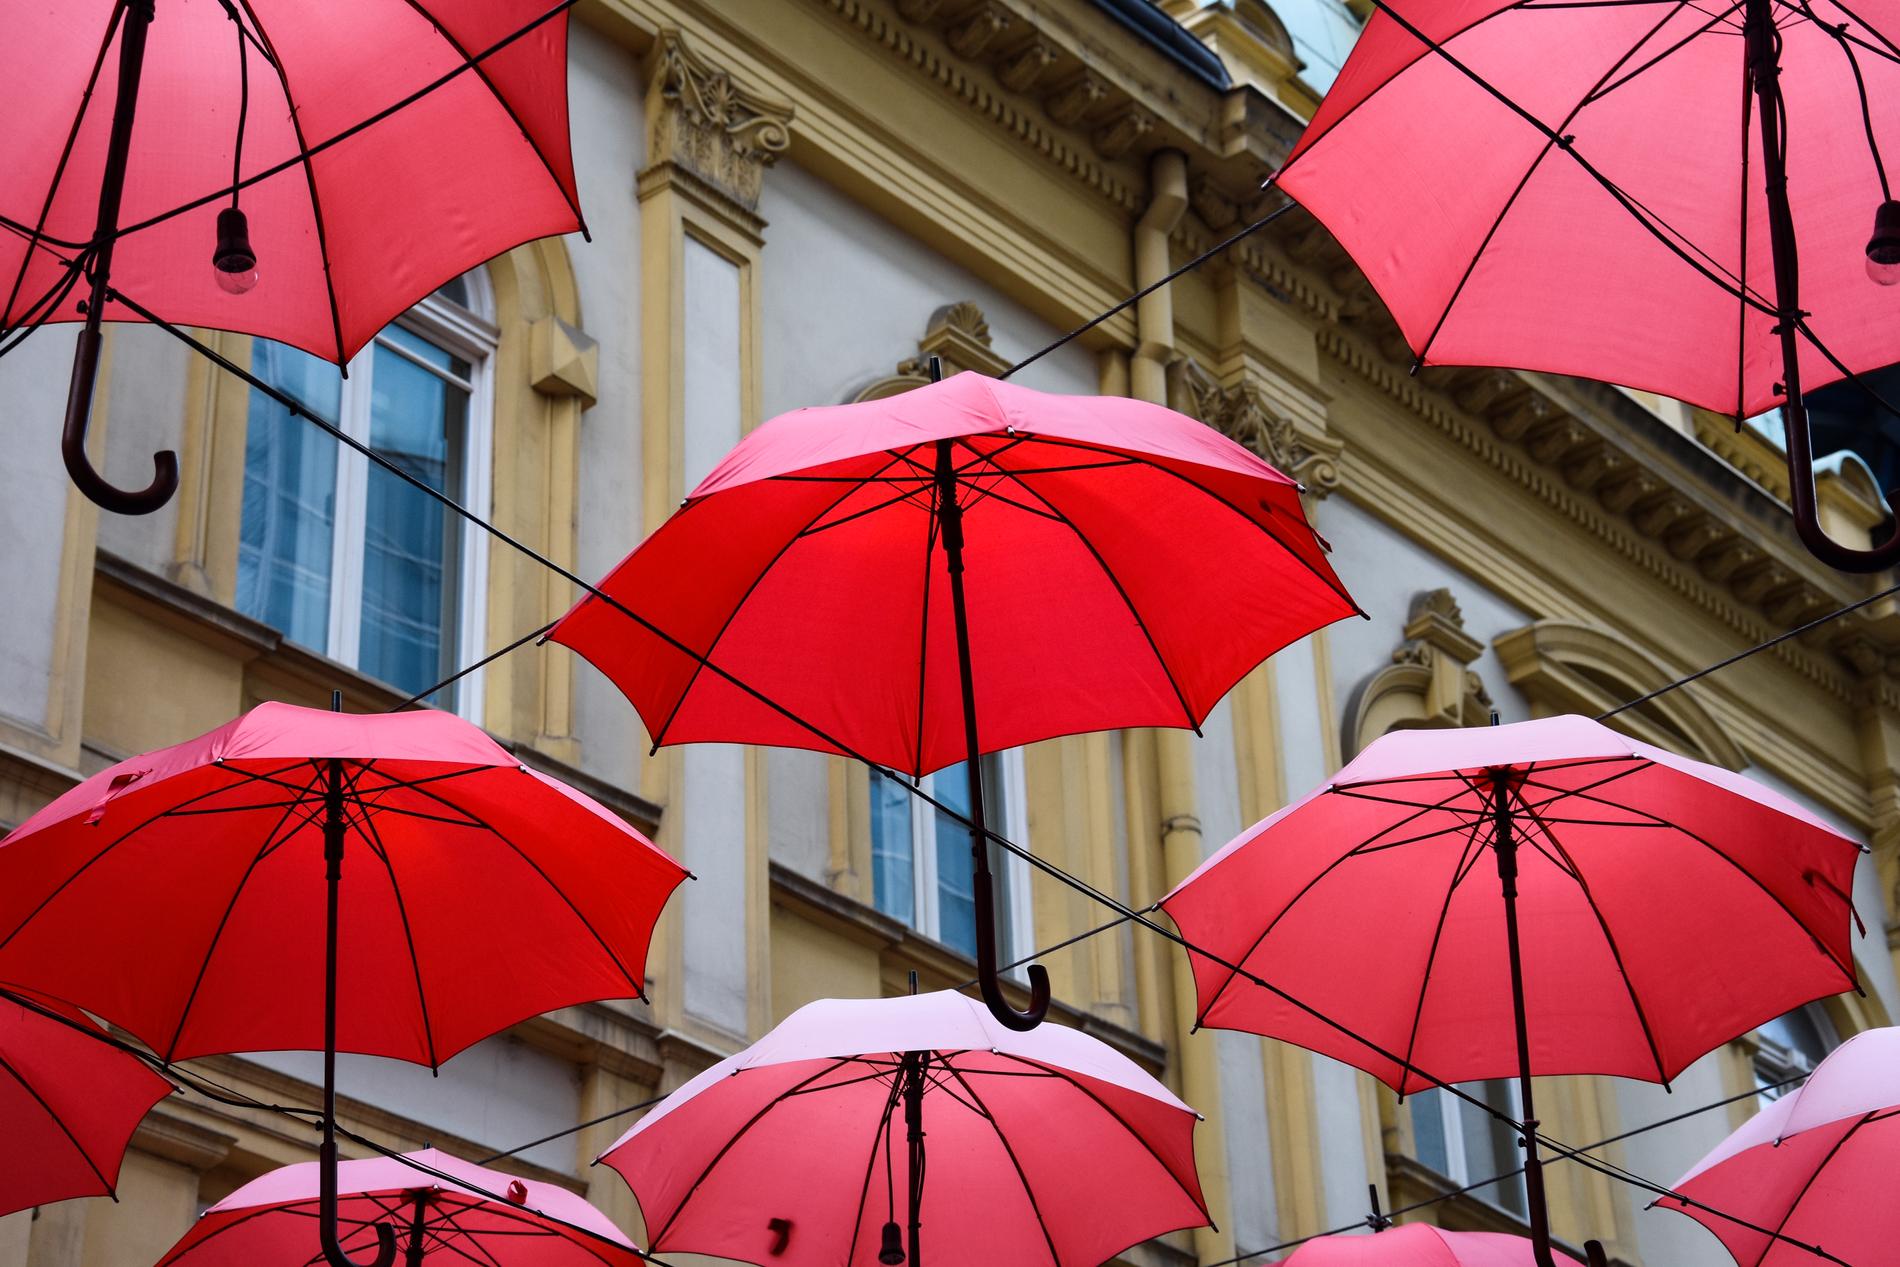 Manufactura har en uteservering där besökarna sitter under dessa röda paraplyer. Men många förbipasserade kommer att fotografera paraplyerna, och i förlängningen dig. 